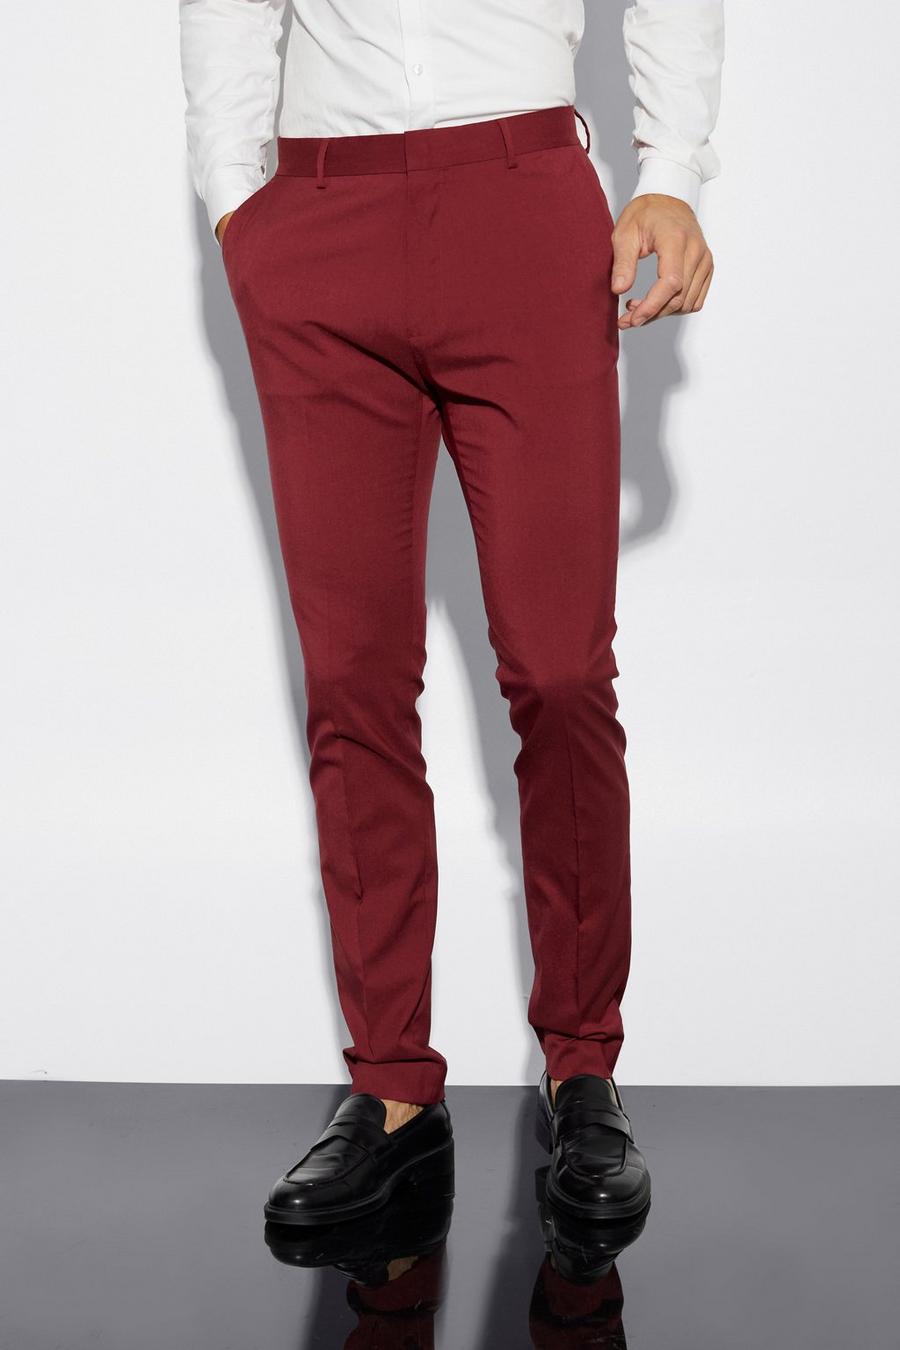 Burgundy red Tall Skinny Tuxedo Suit Trouser